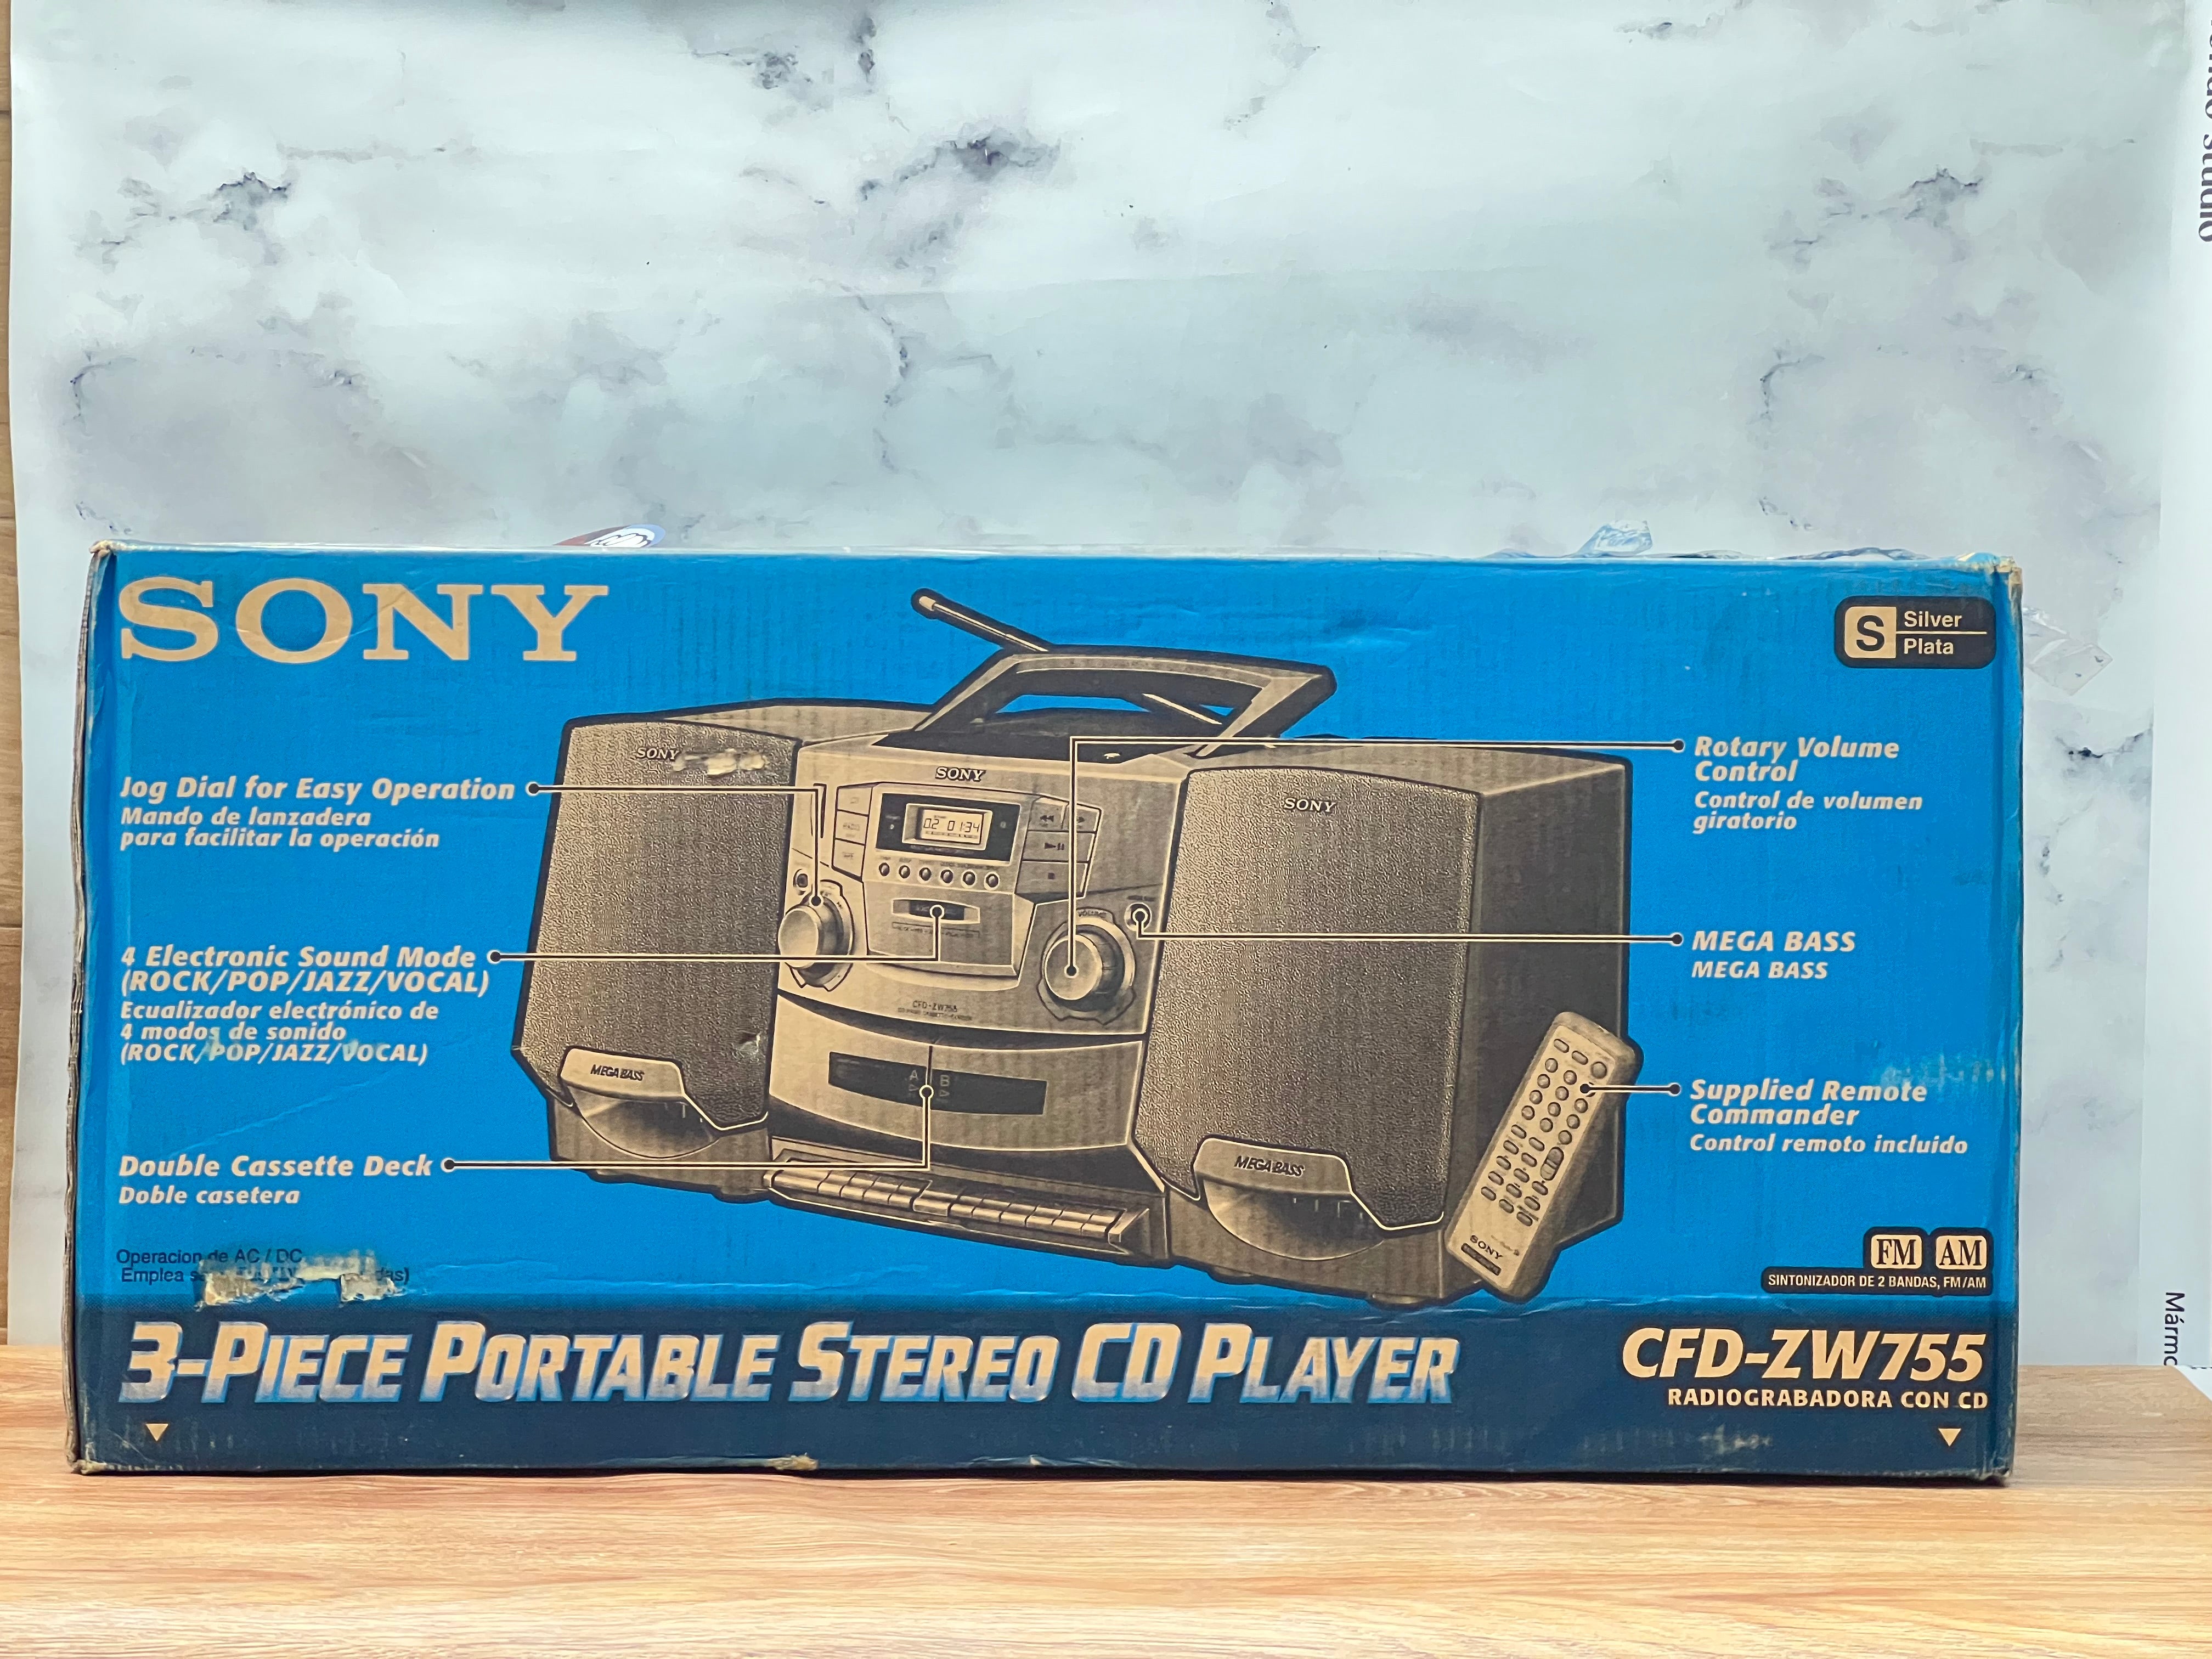 Reproductor SONY reproductor de casete doble portátil grabador reproductor de cd radio